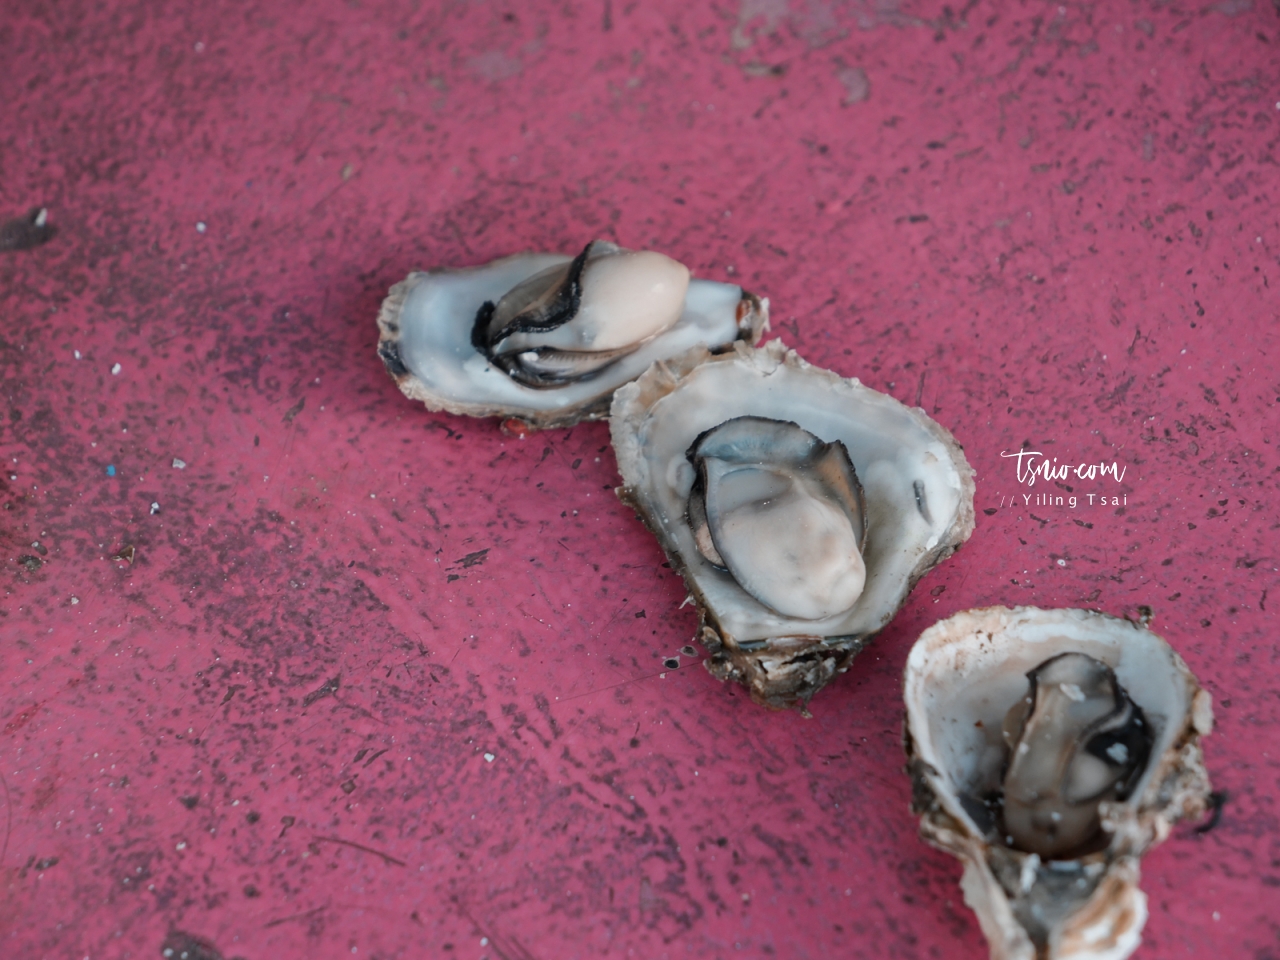 澎湖海洋牧場海上皇宮 烤牡蠣海鮮粥吃到飽 釣魚體驗 卡拉 OK